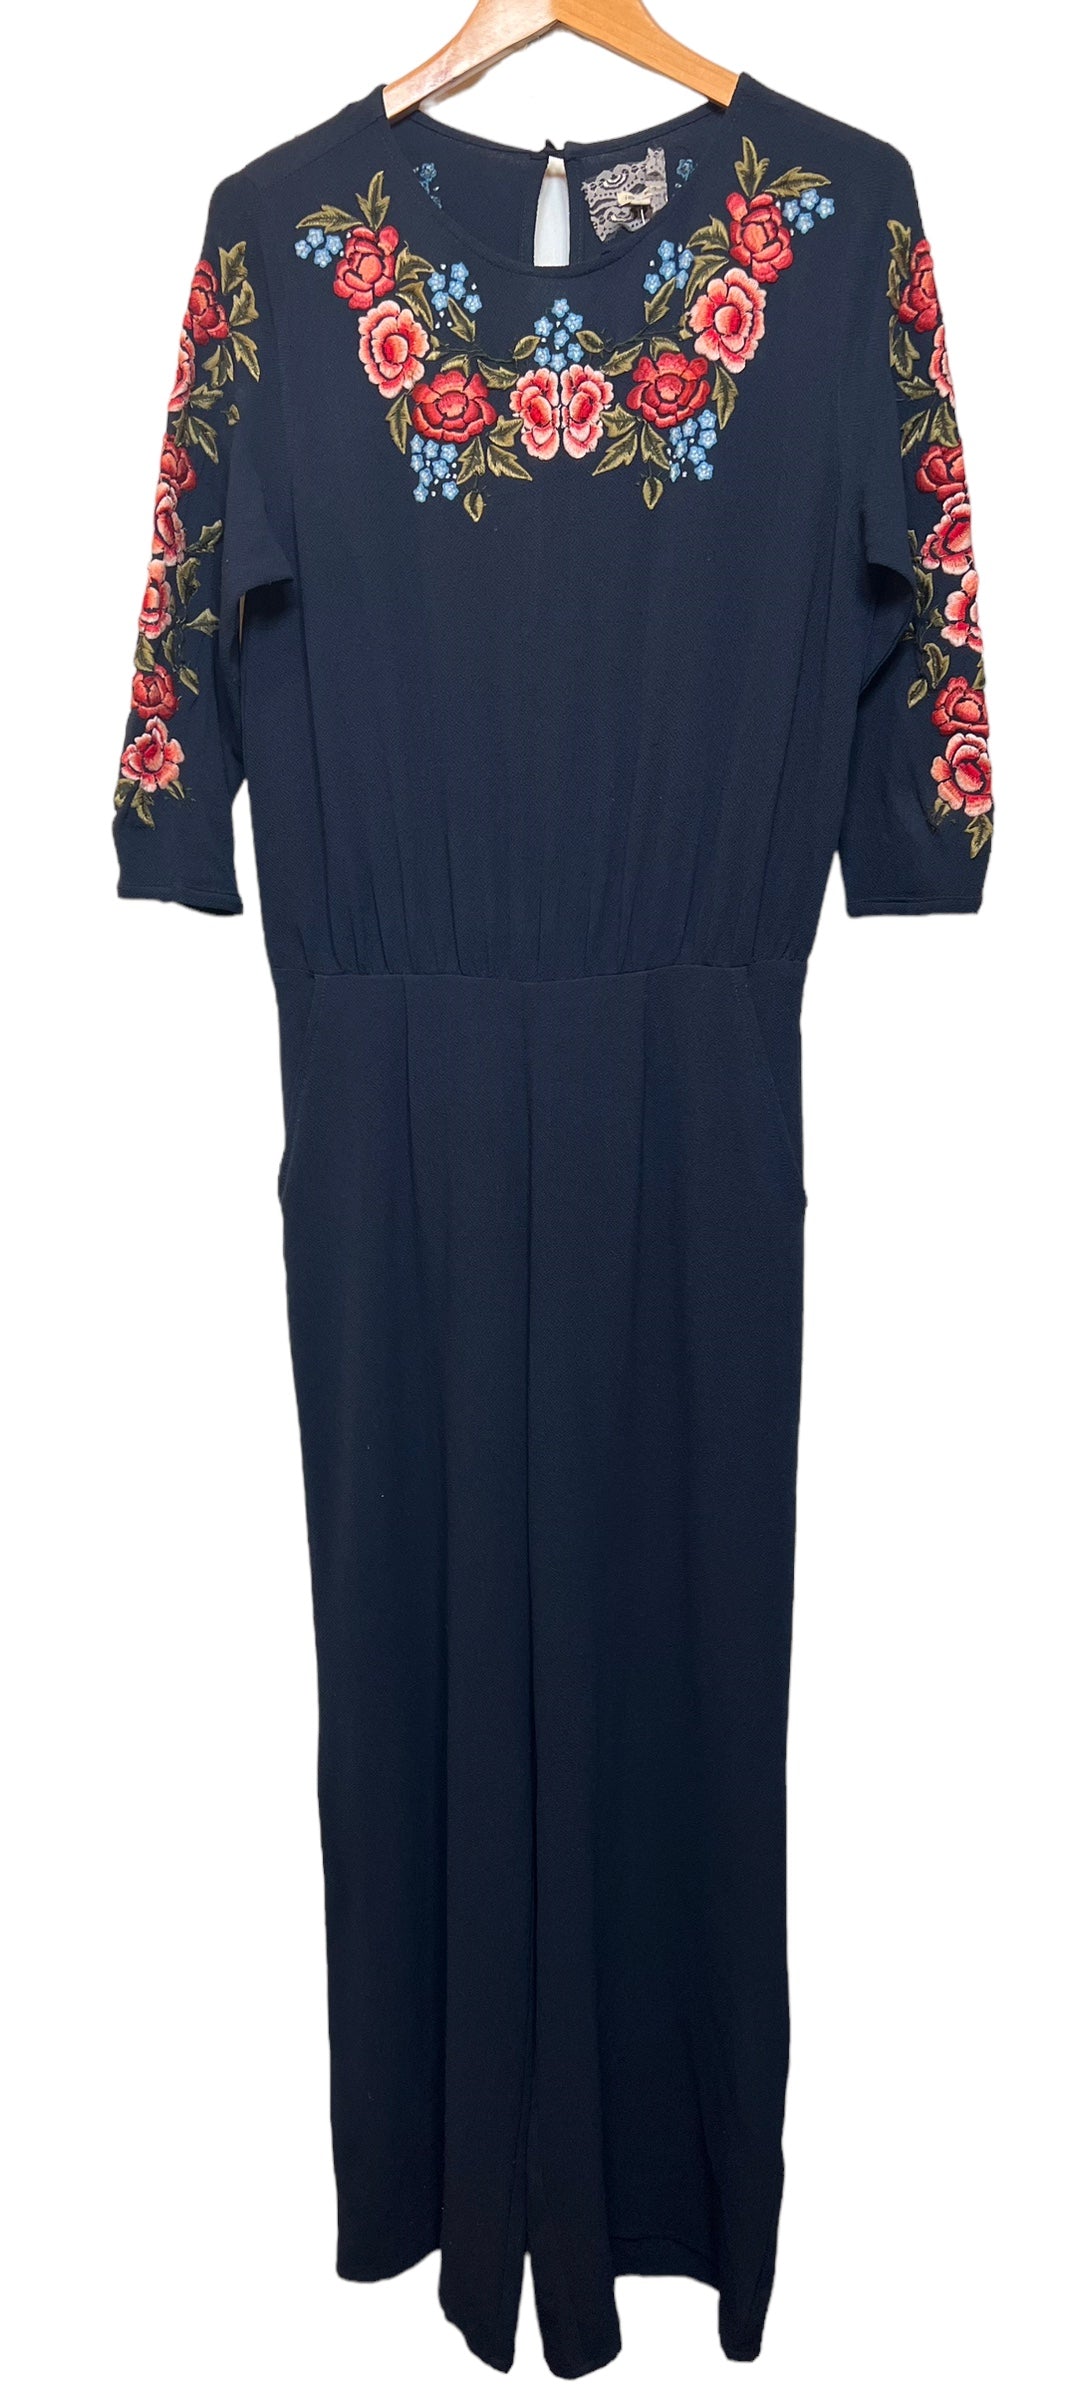 Women’s Navy Blue Floral Jumpsuit (Size L)